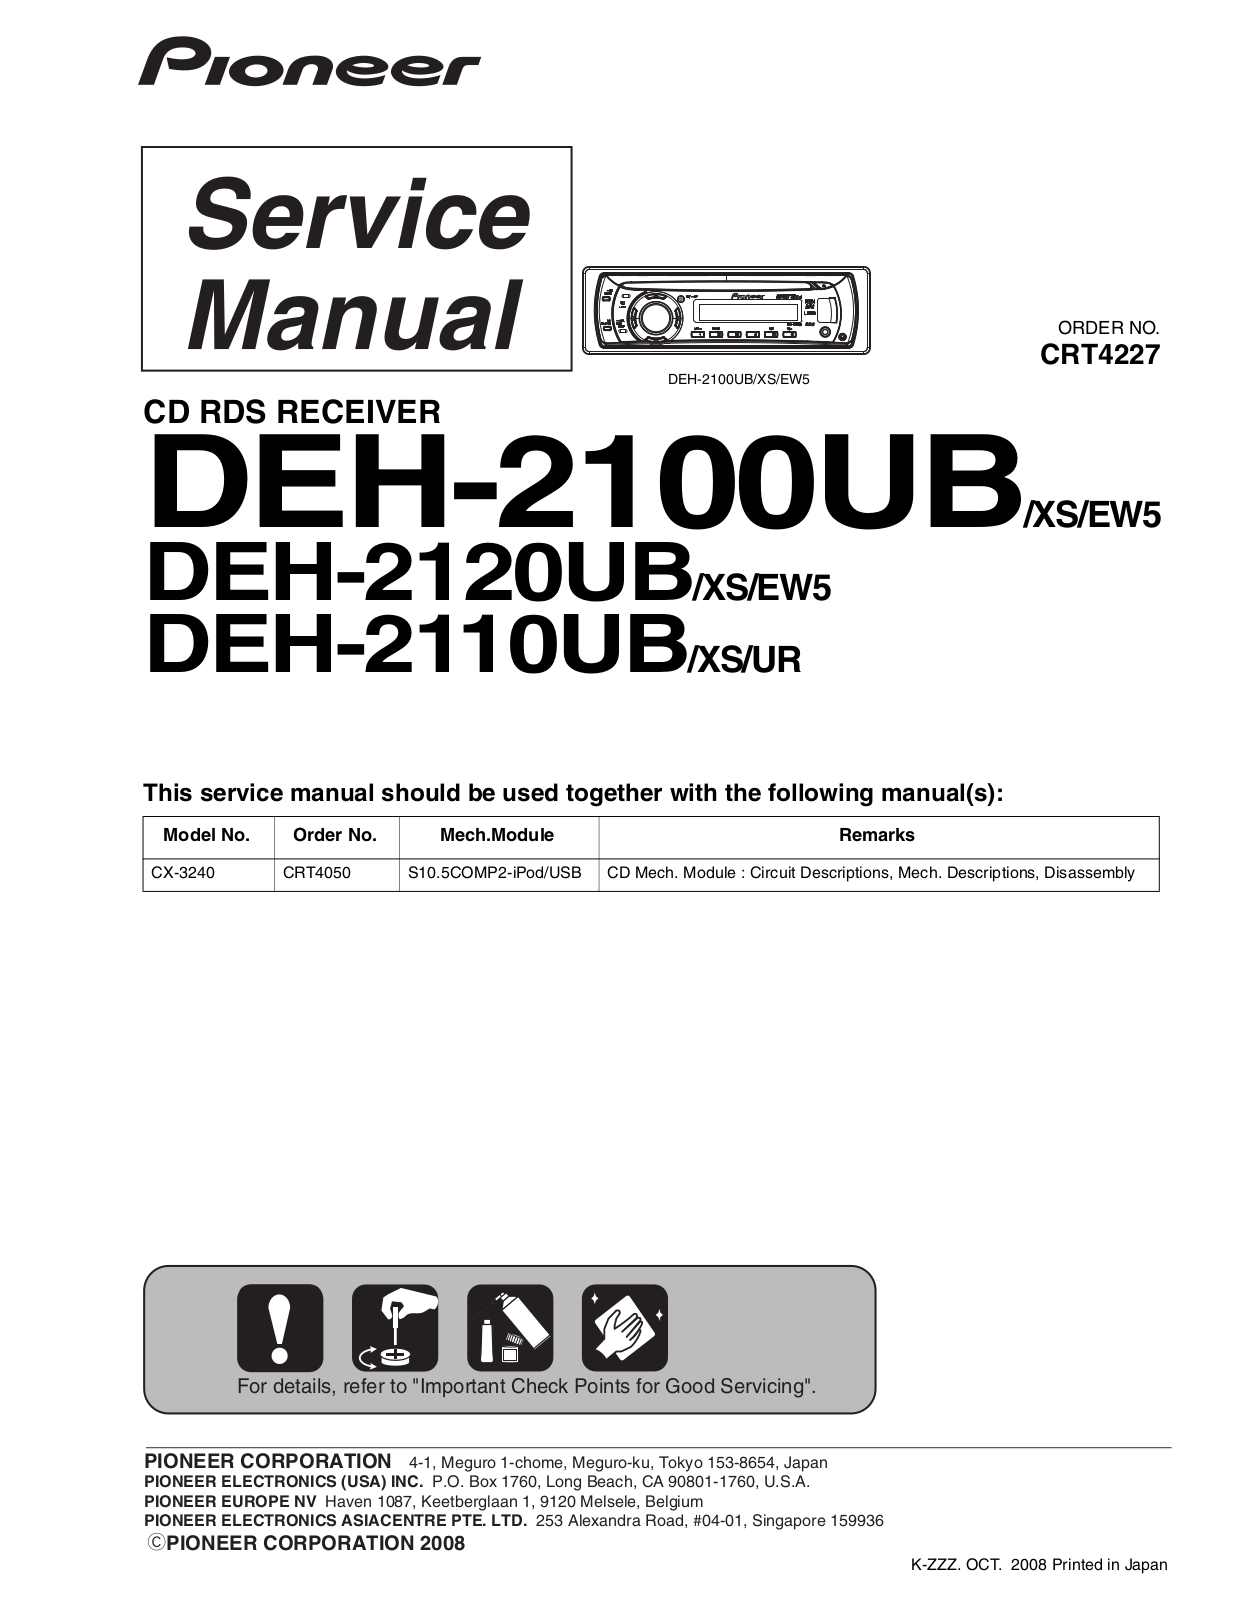 Pioneer DEH-2100UB, DEH-2110UB, DEH-2120UB Service Manual